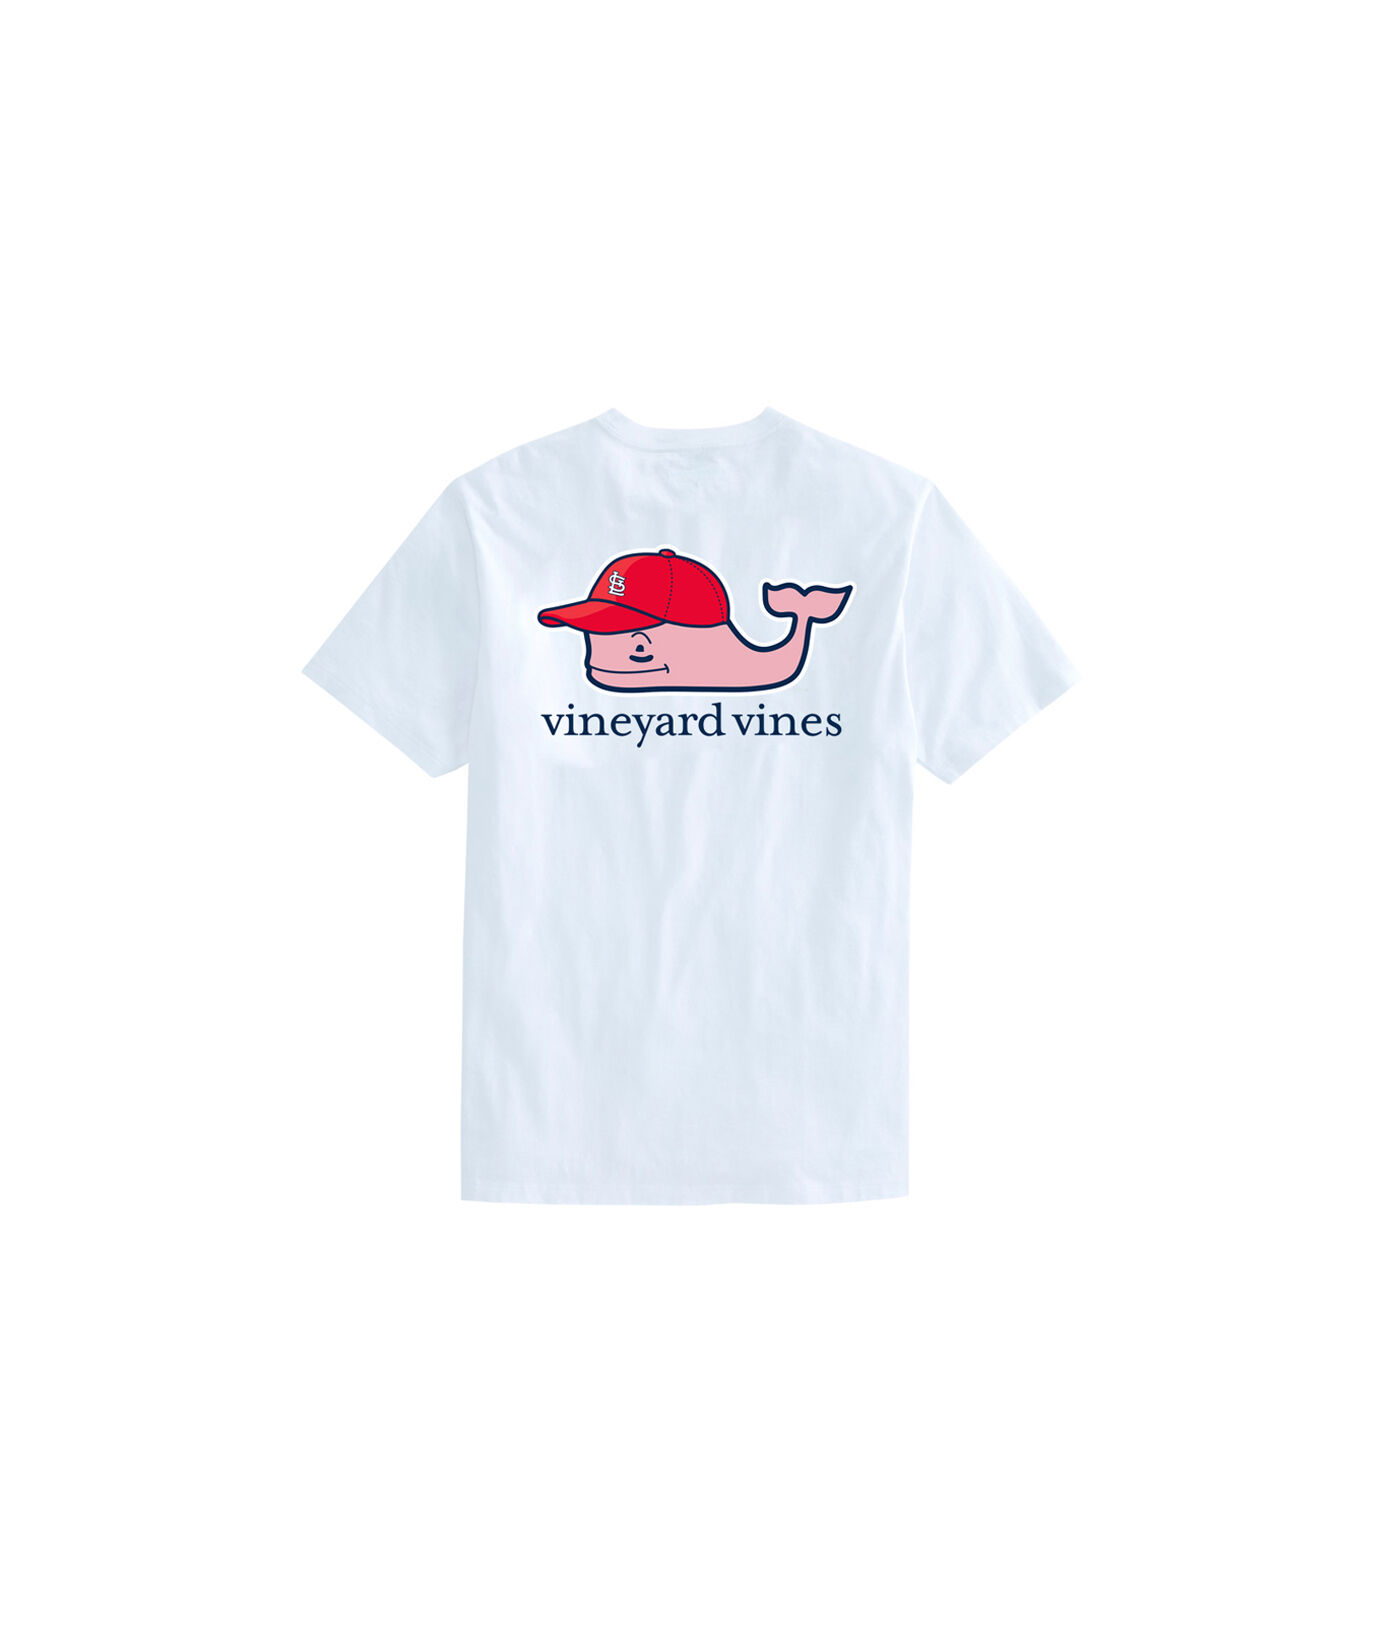 cardinals shirts